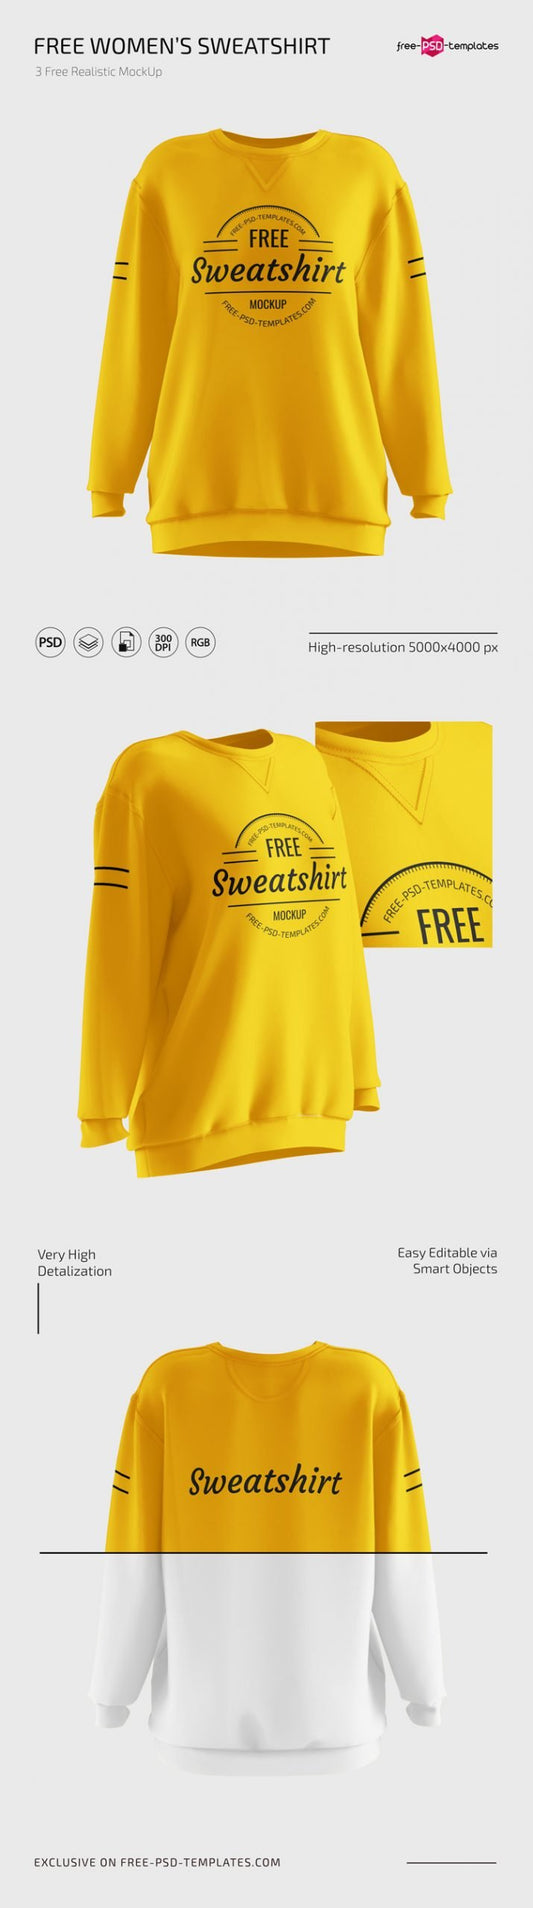 Free Women’S Sweatshirt Mockups In Psd